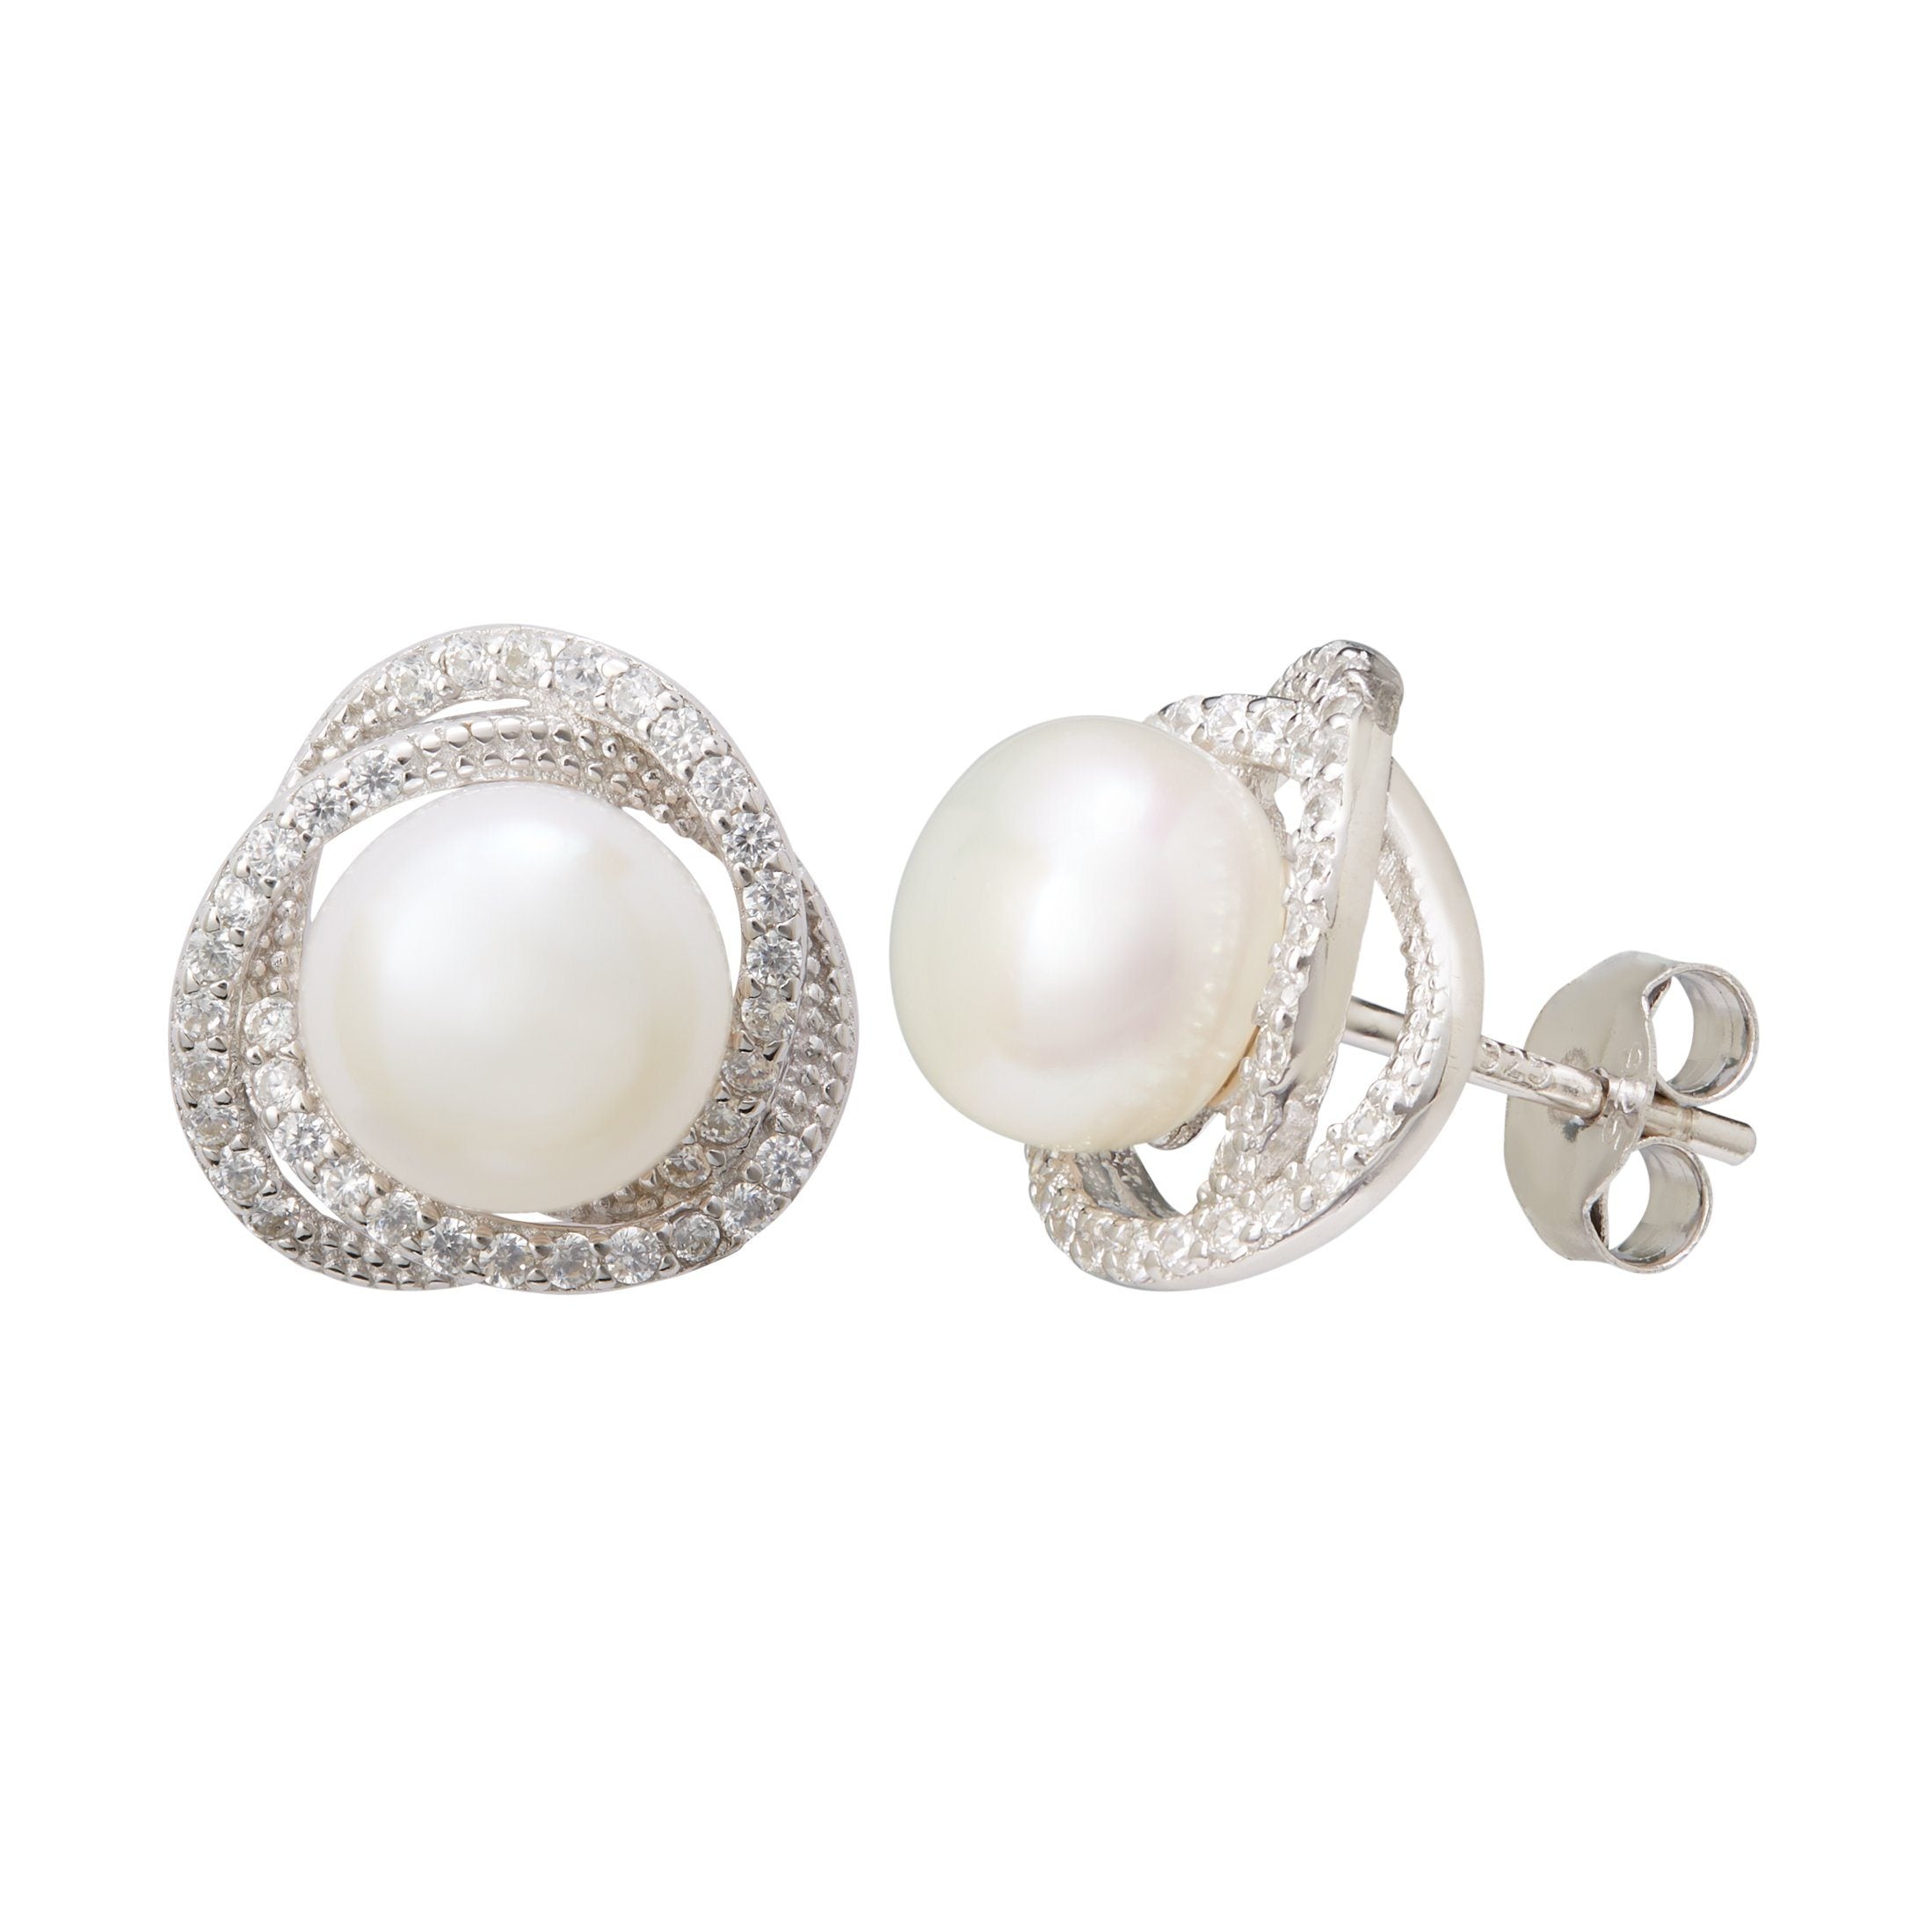 Freshwater Pearl & Cubic Zirconia Halo Swirl Earrings in Sterling Silver Earrings Bevilles 